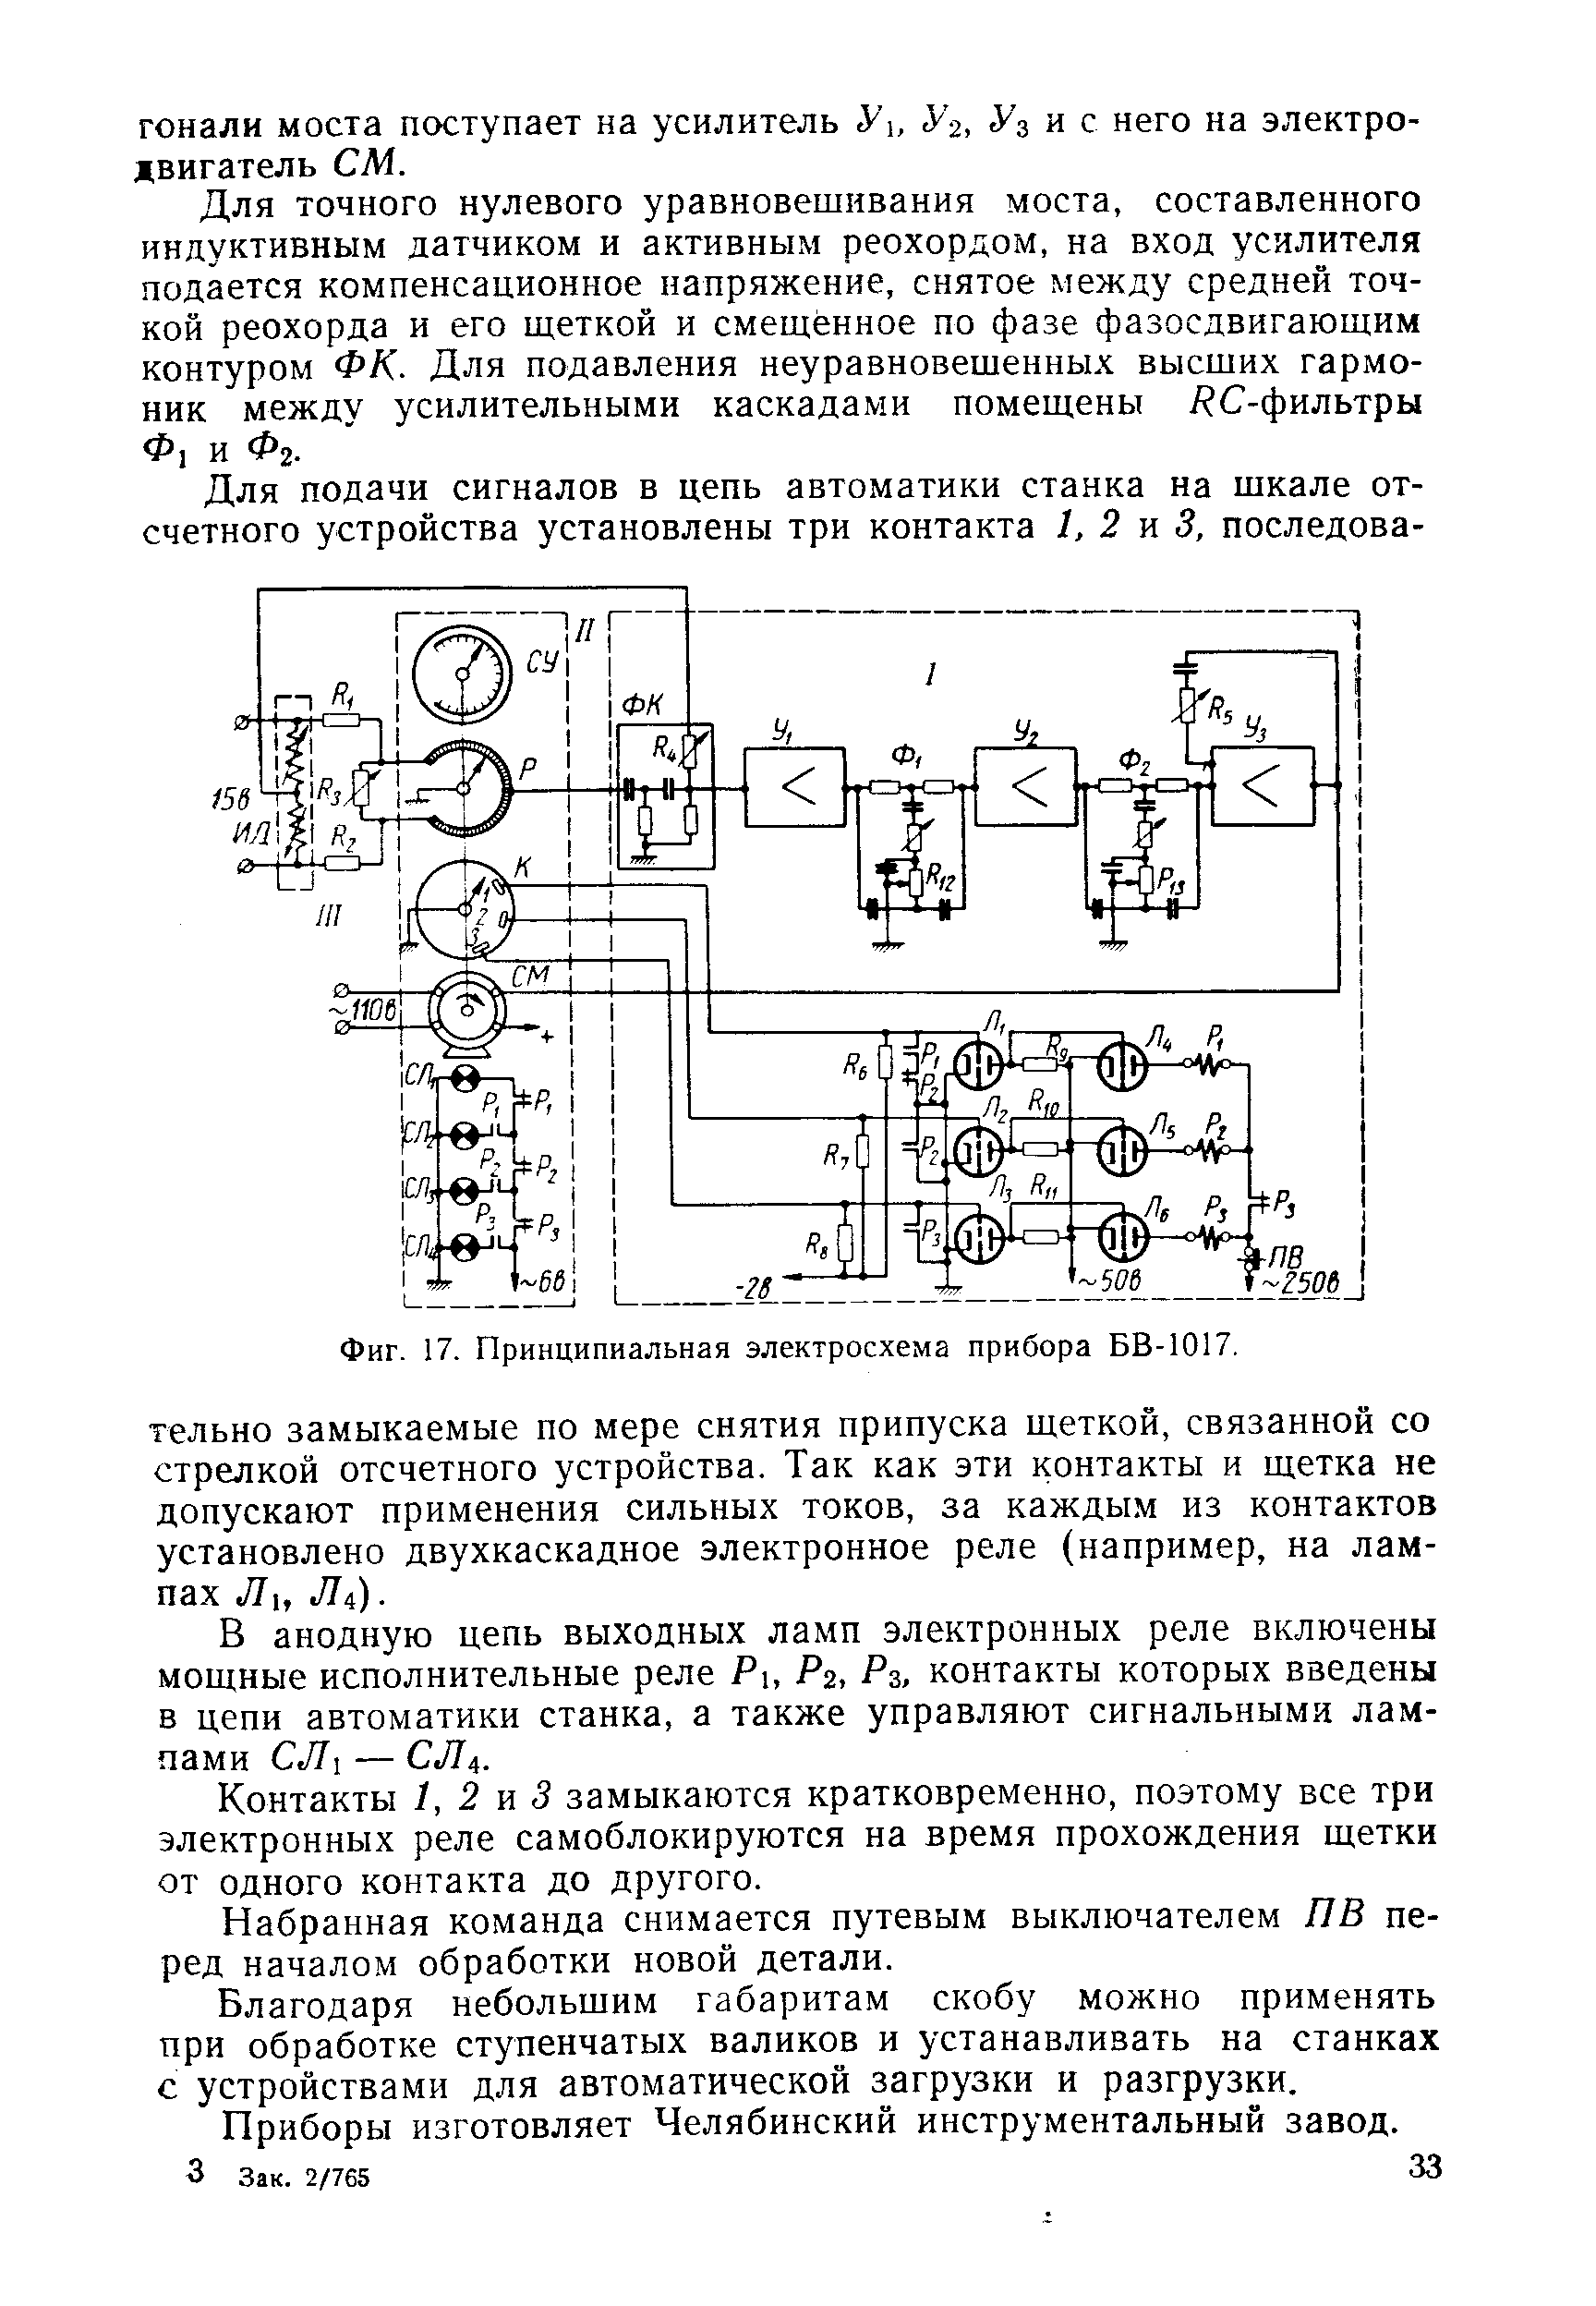 Фиг. 17. Принципиальная электросхема прибора БВ-1017.
